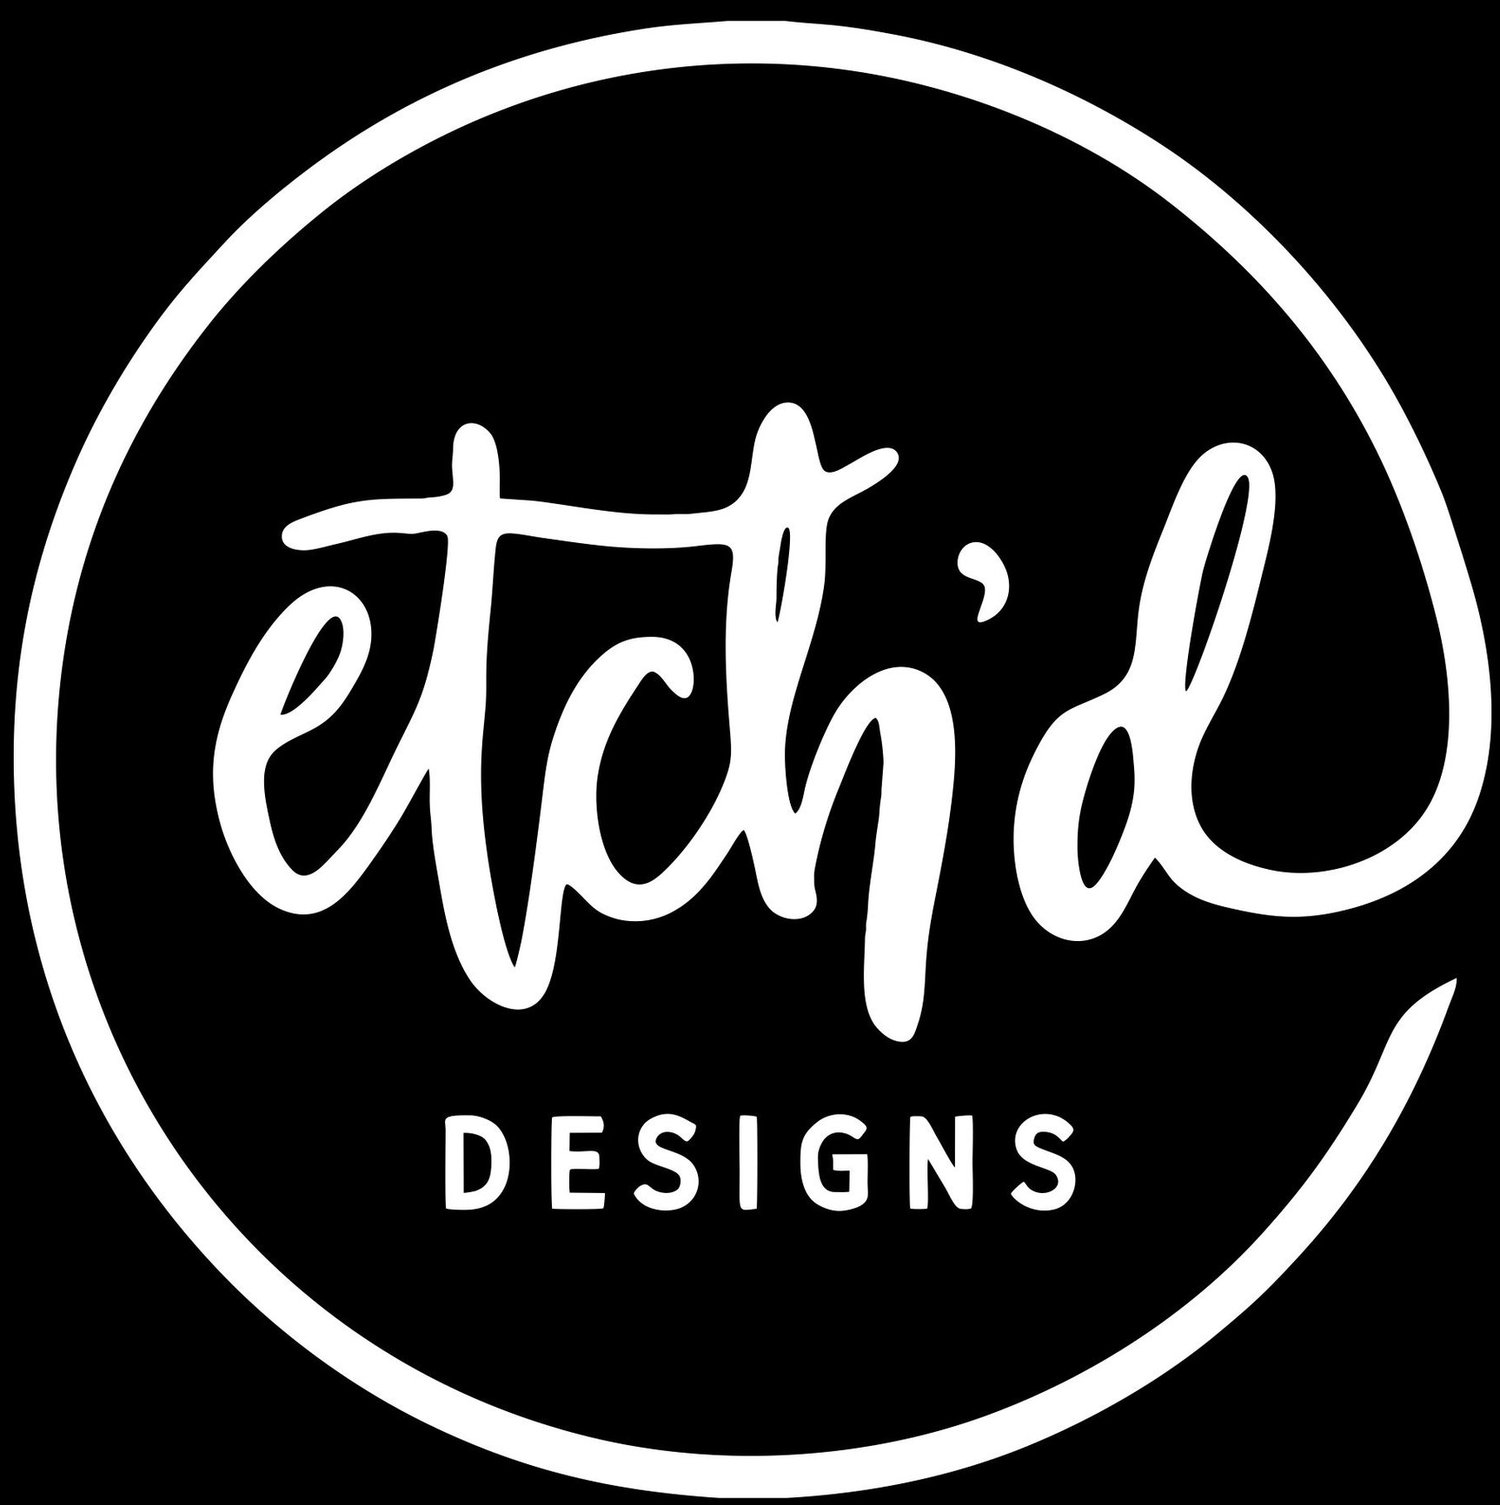 Etch'd Designs